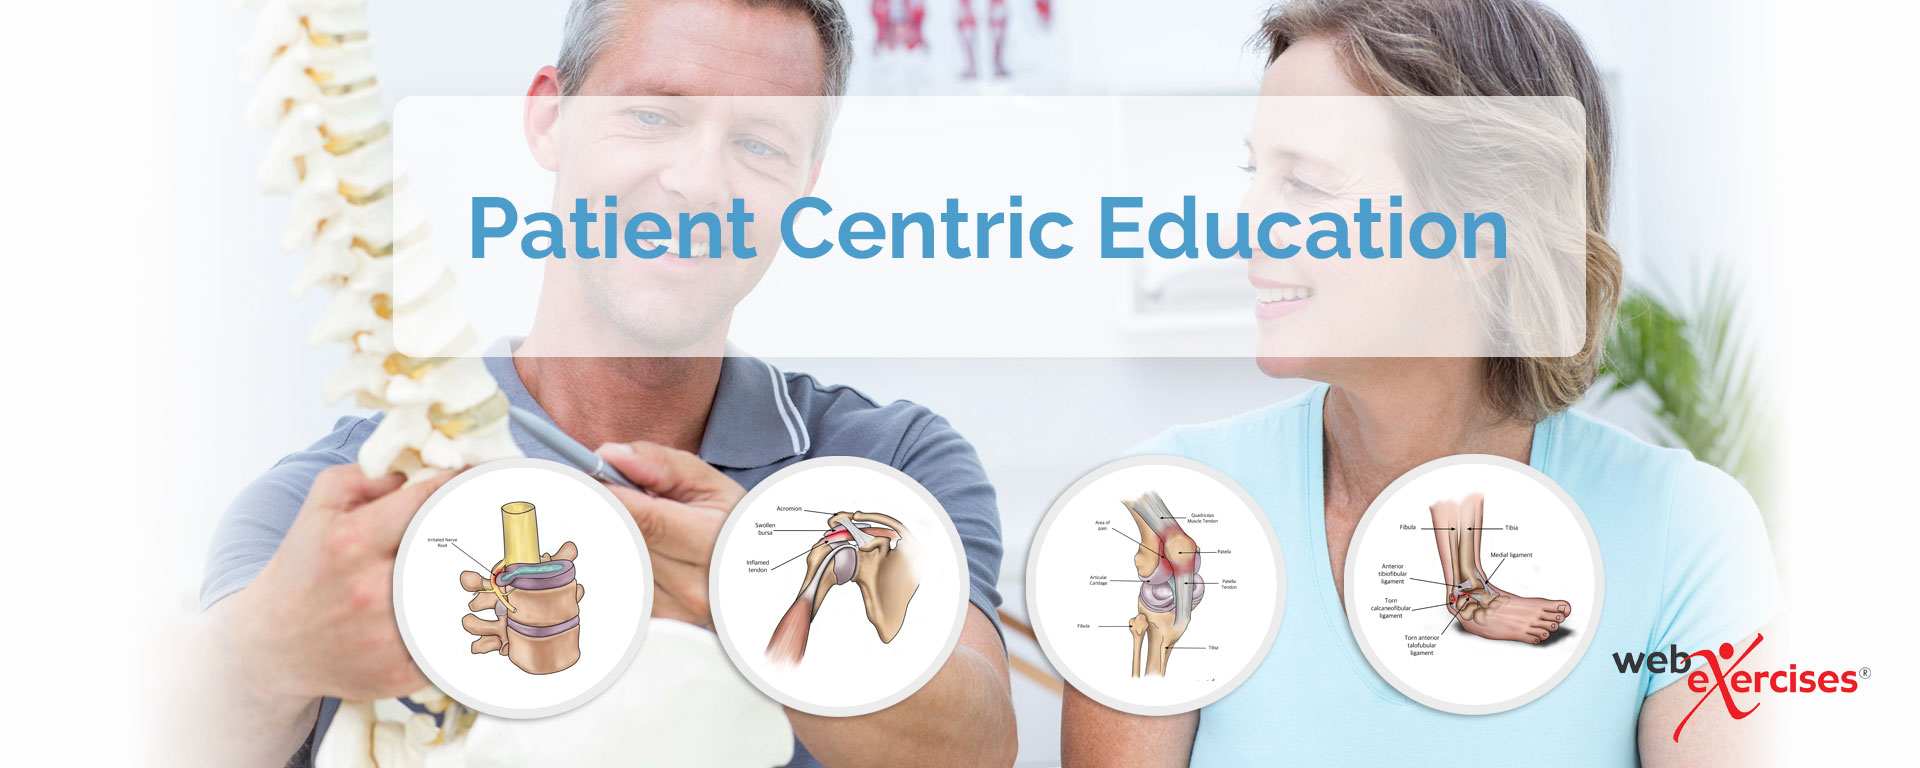 patient centric education